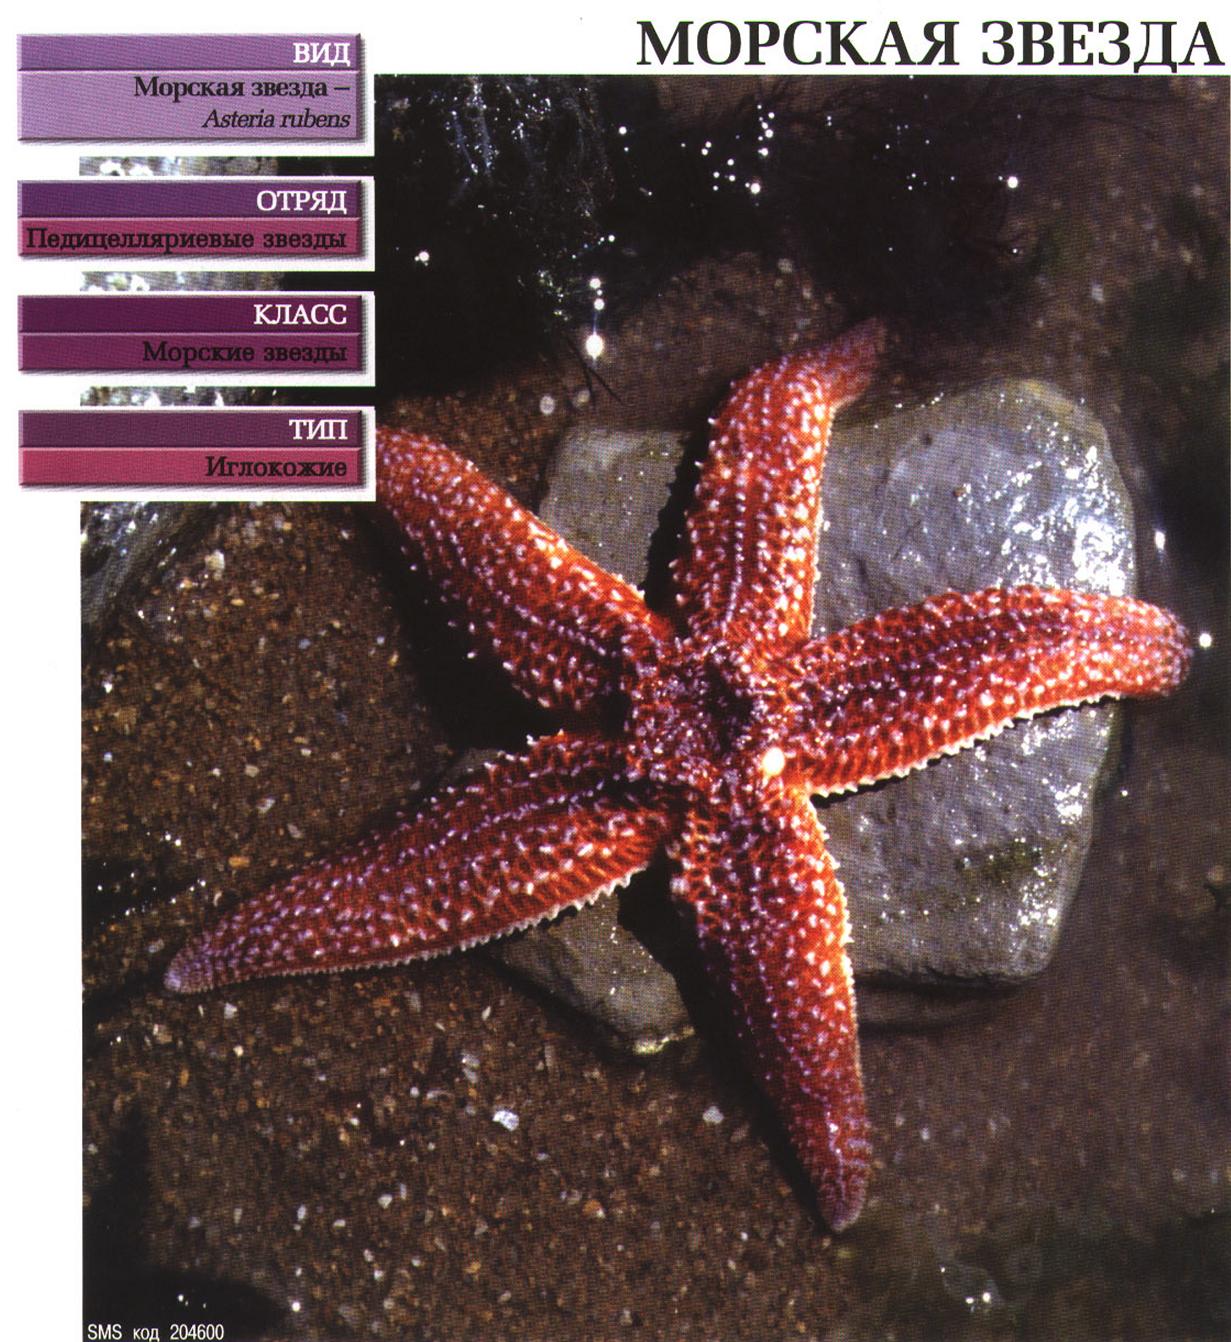 Систематика (научная классификация) морской звезды Asteria rubens.